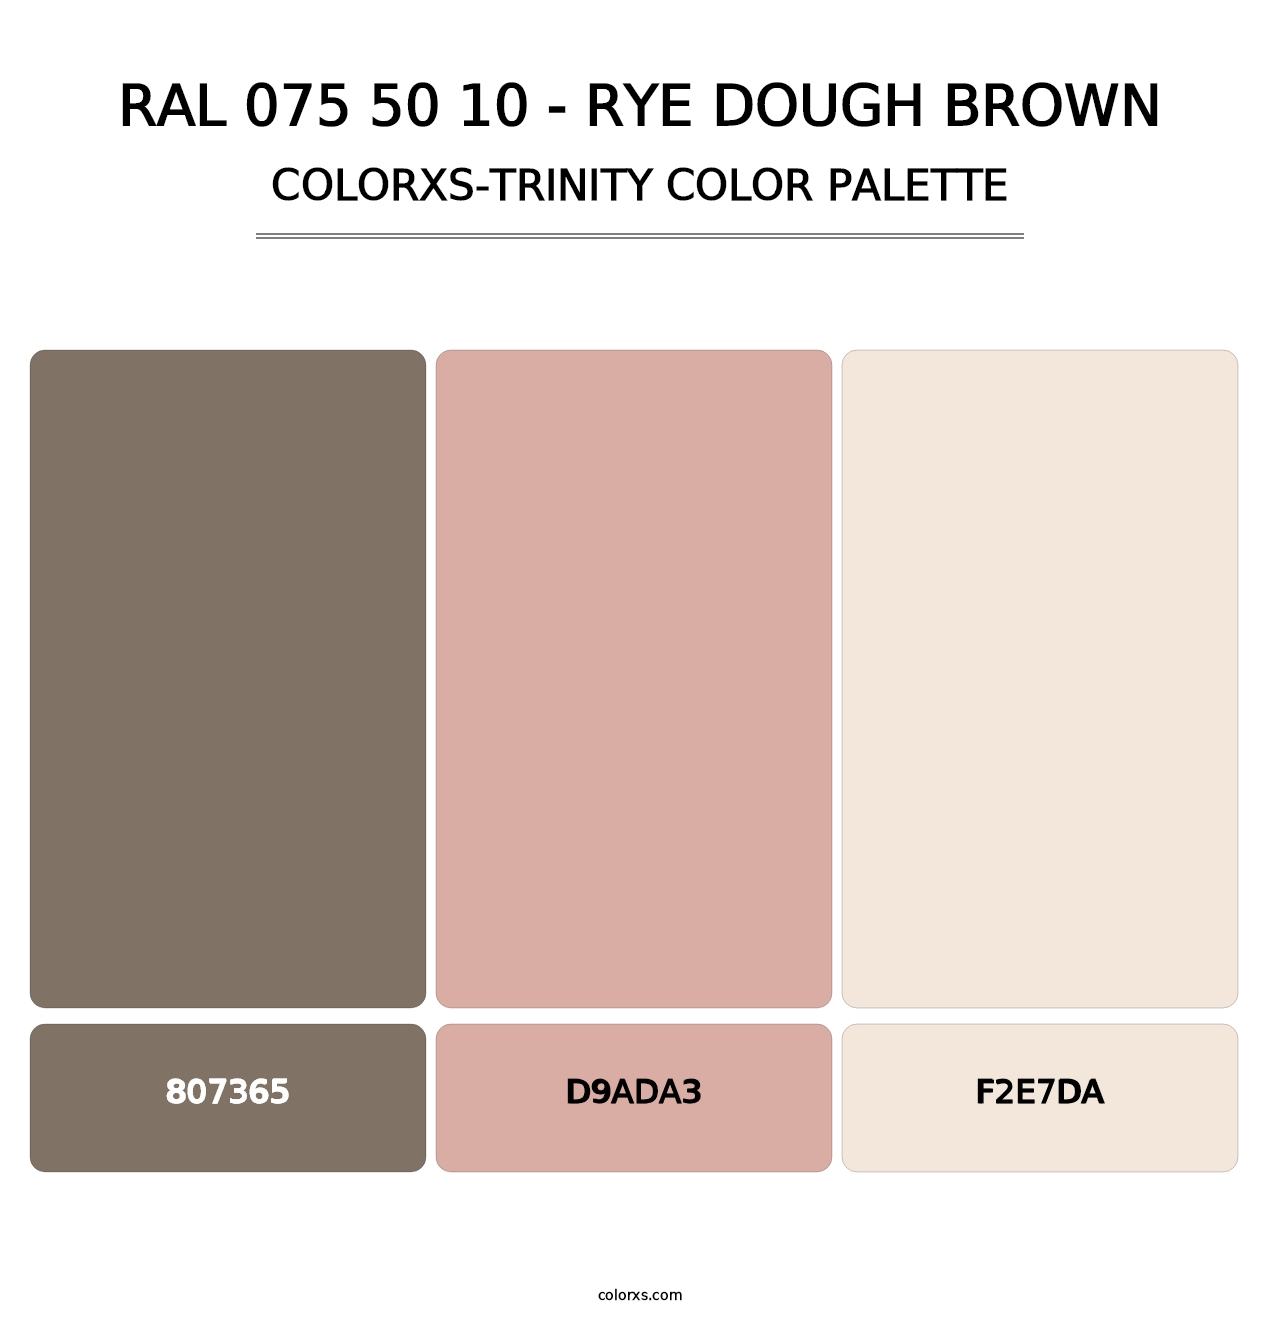 RAL 075 50 10 - Rye Dough Brown - Colorxs Trinity Palette